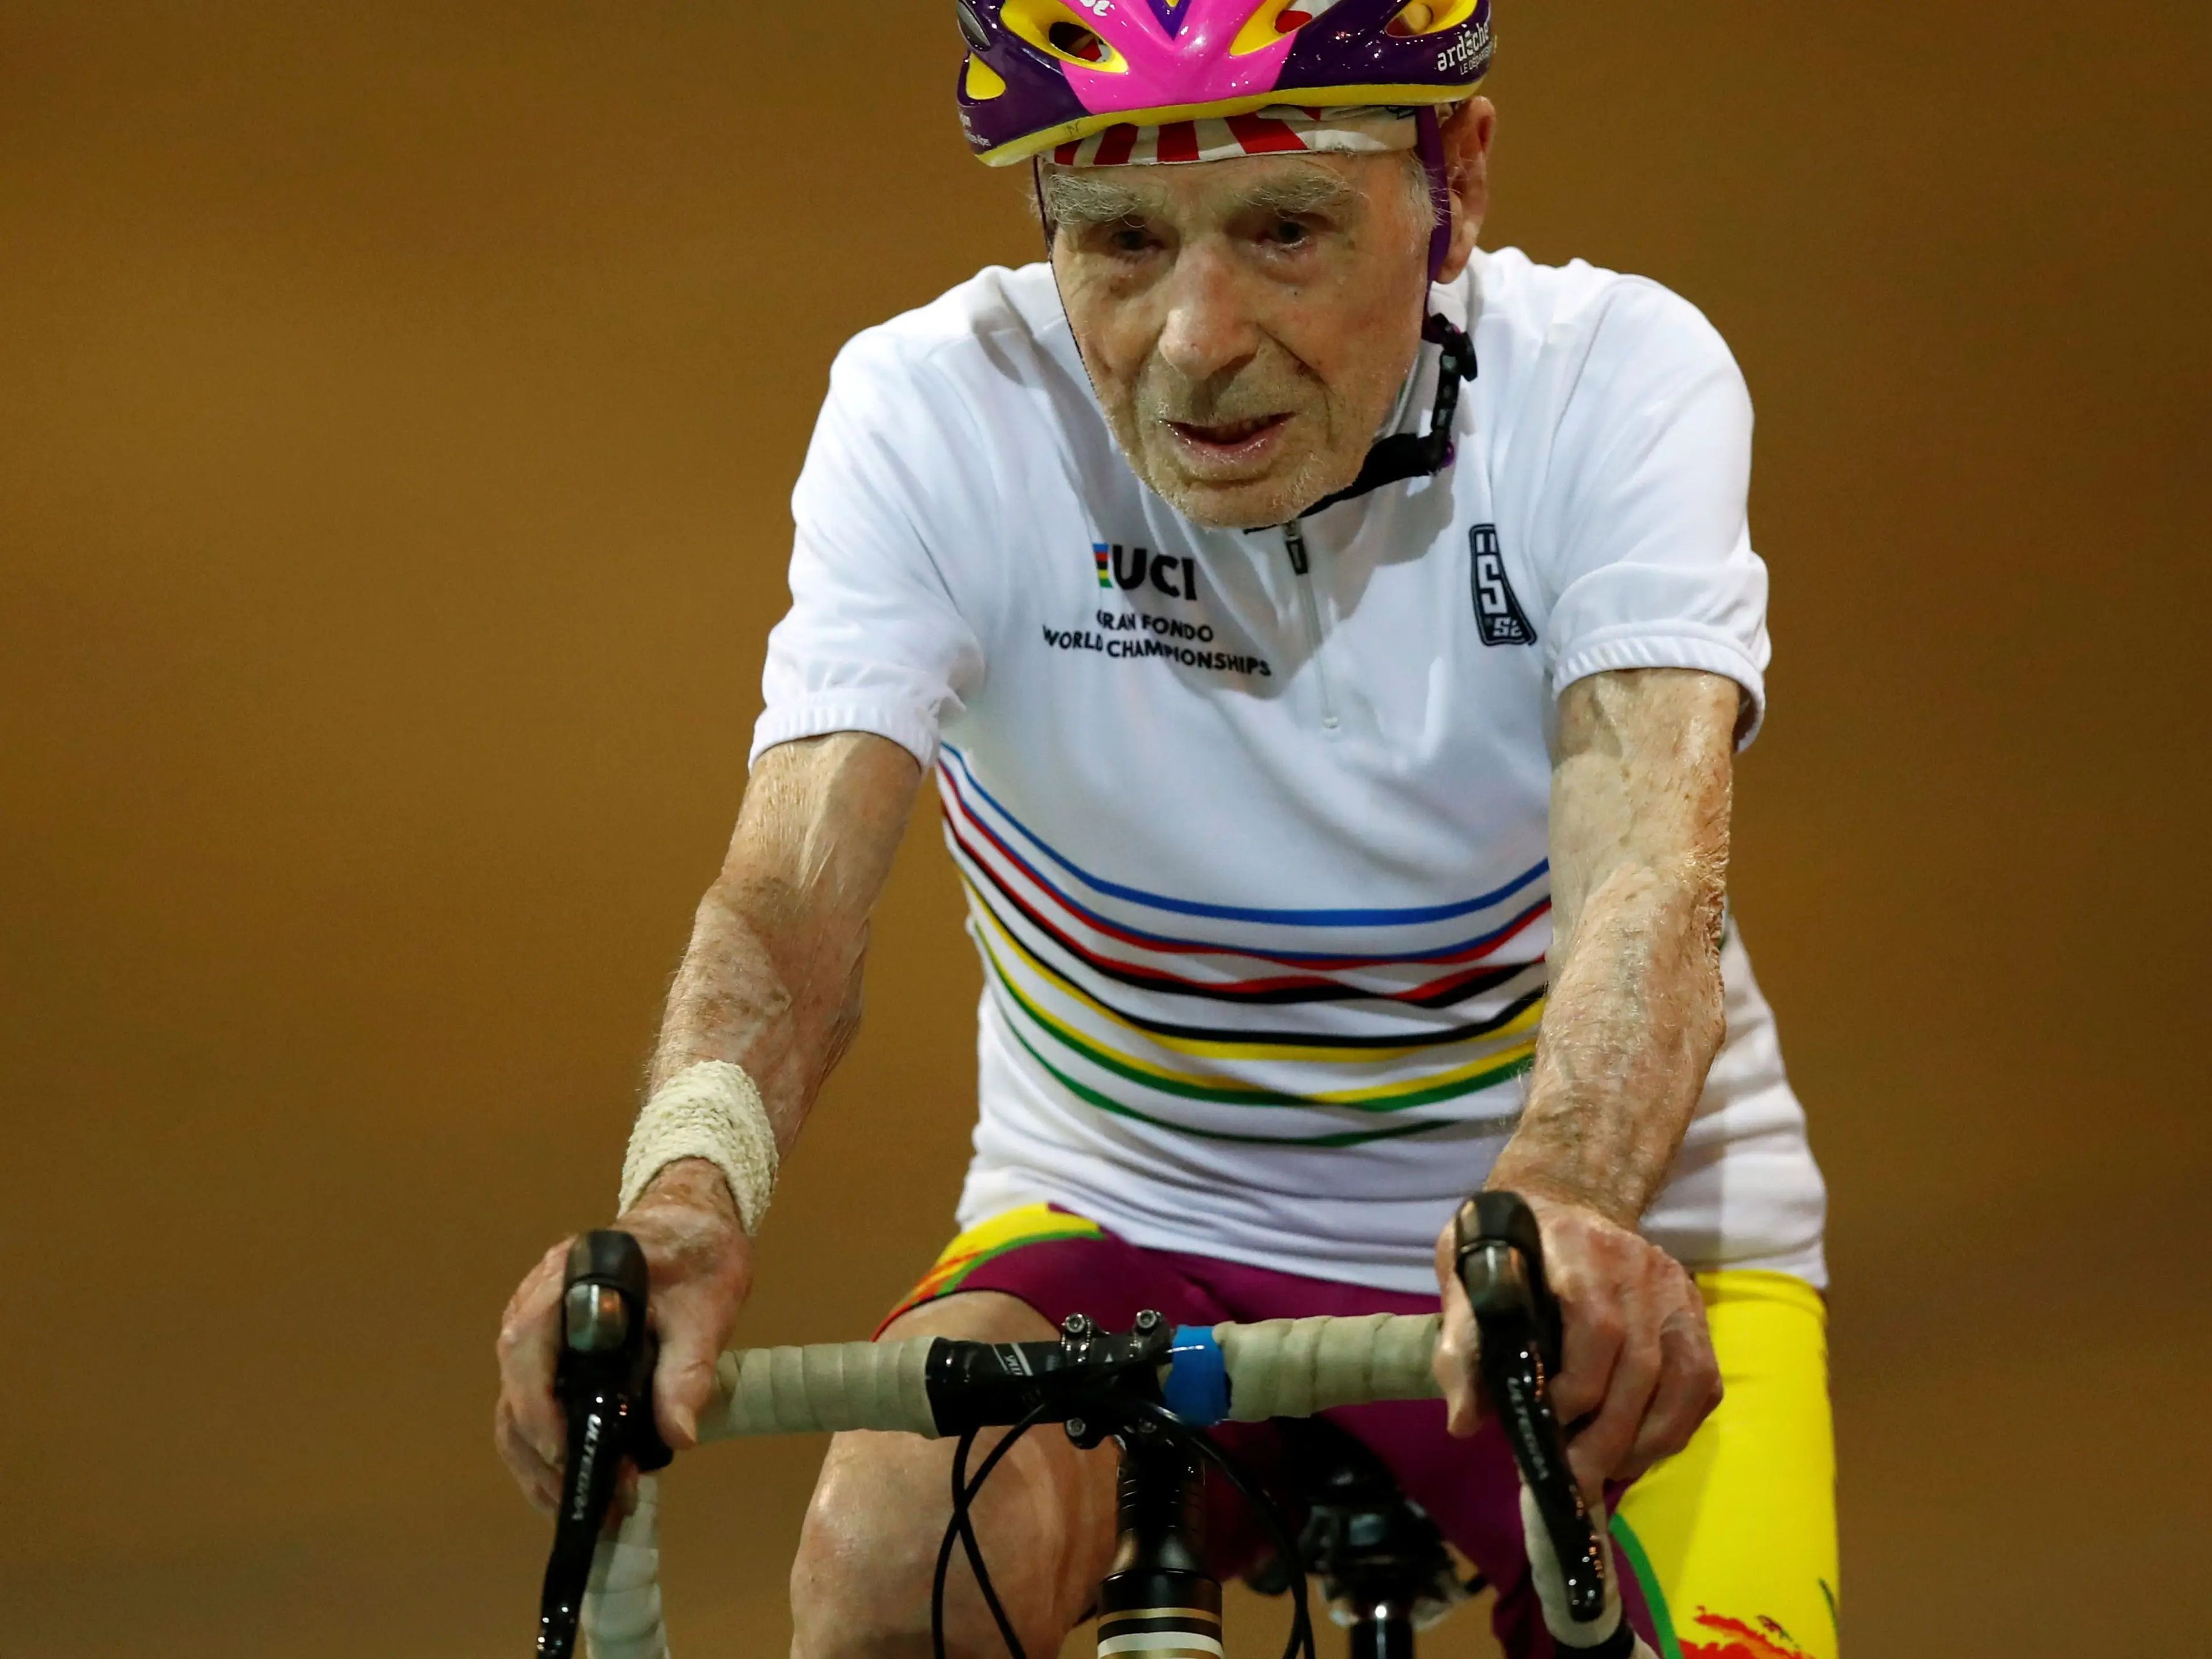 El ciclista francés Robert Marchand recorre el Velódromo Nacional de Saint-Quentin-en-Yvelines en Montigny-le-Bretonneux (Francia) a la edad de 106 años, el 26 de octubre de 2018.